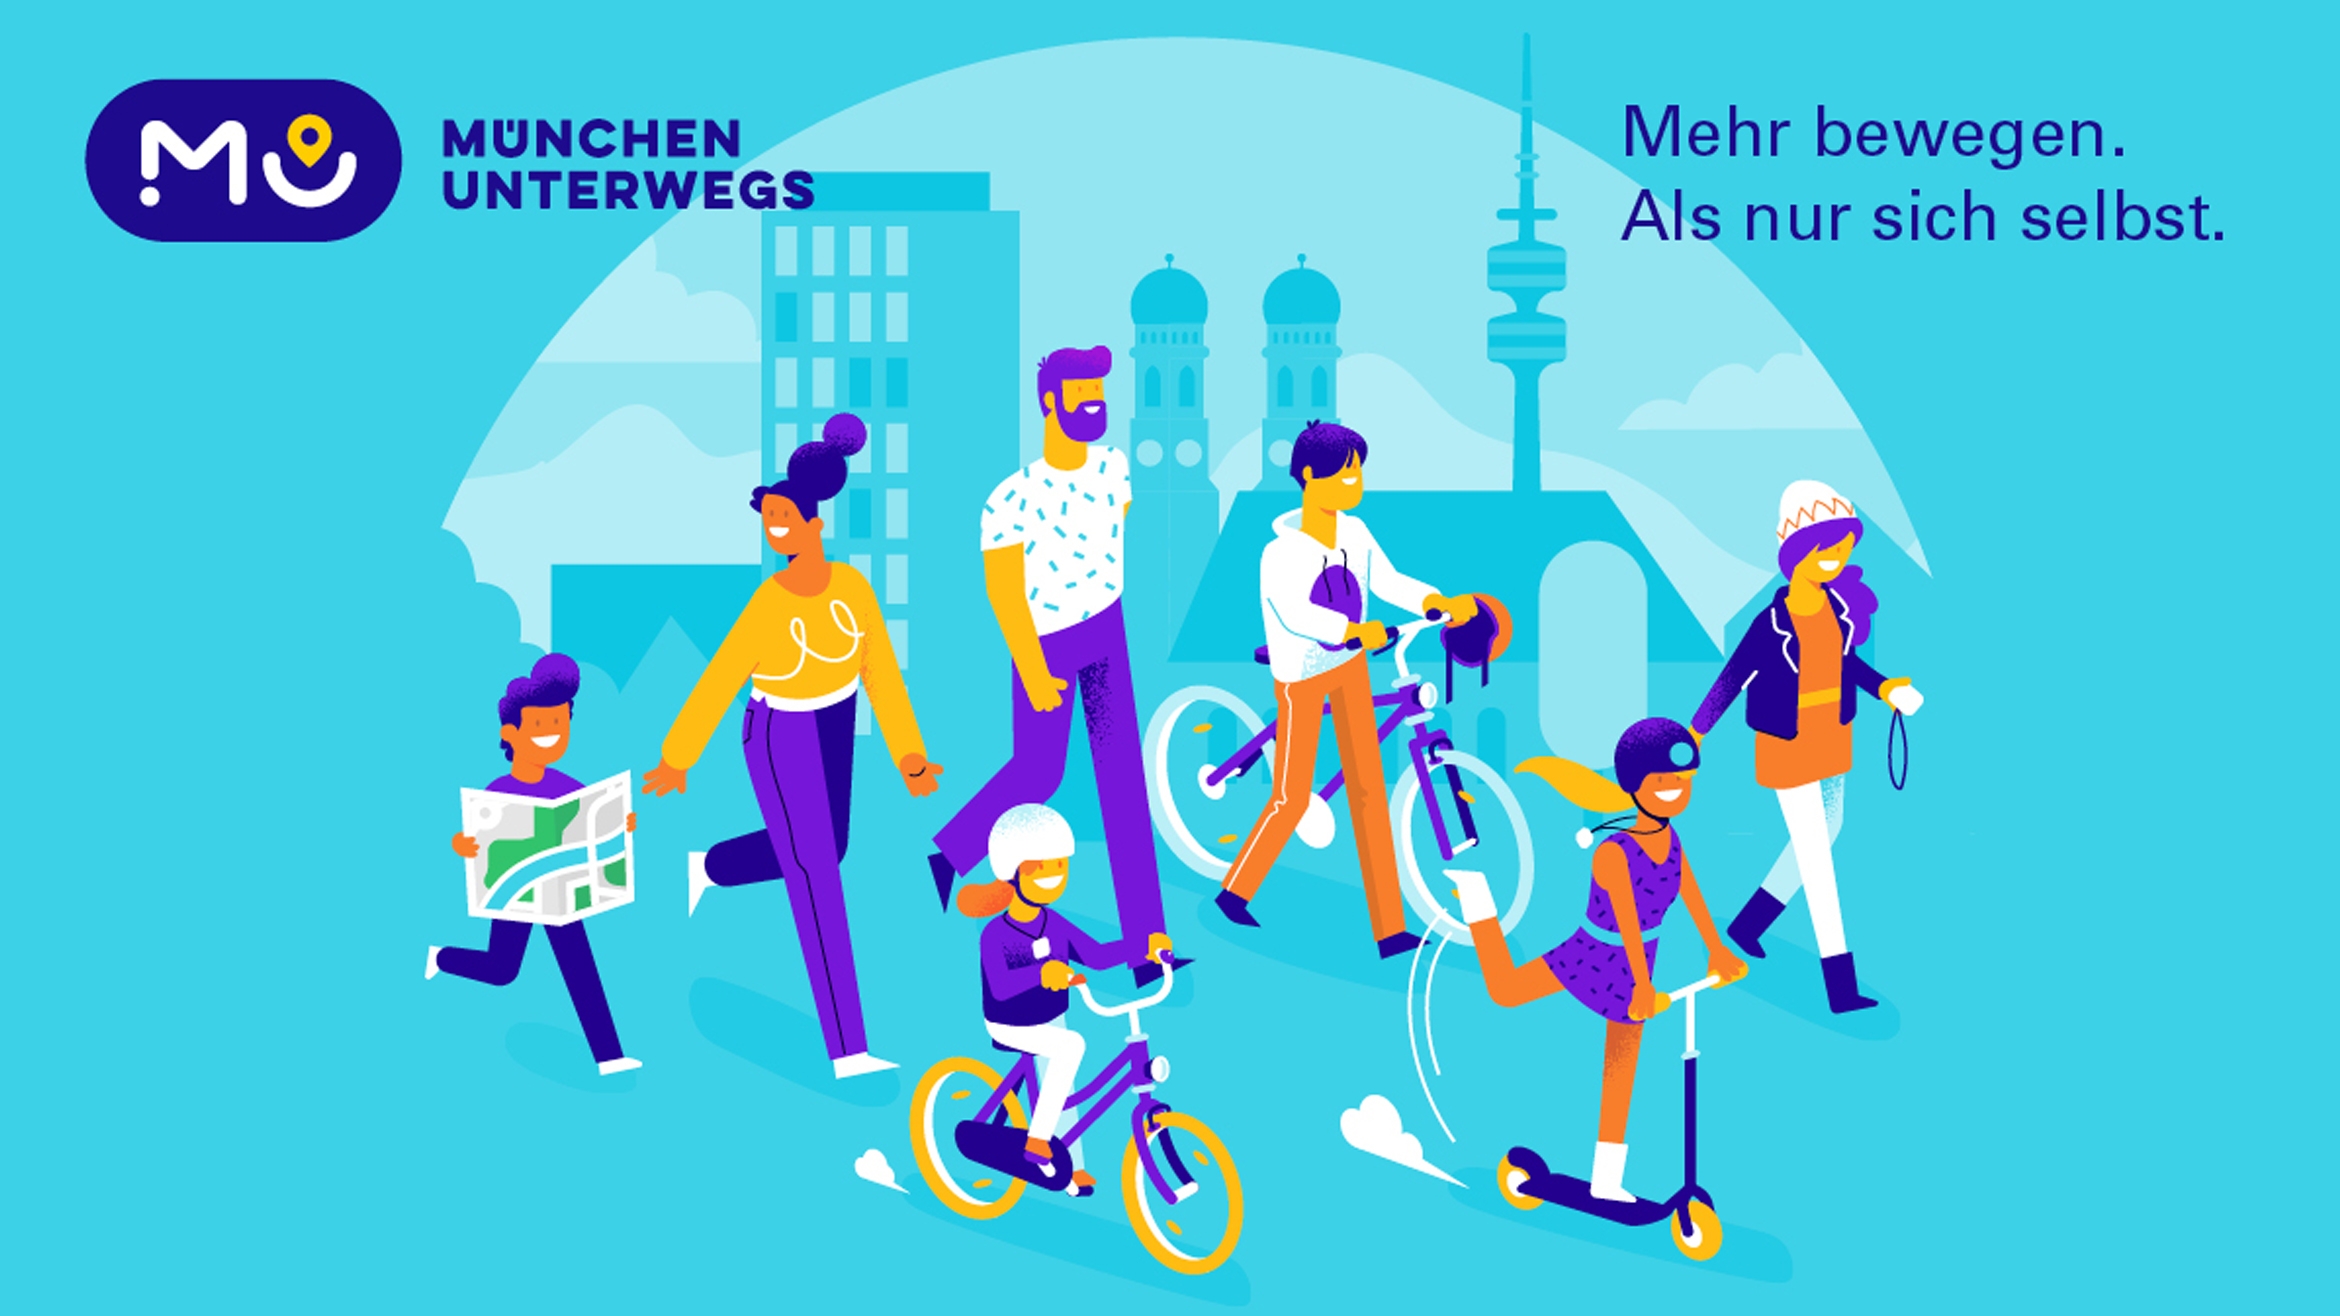 Unter dem Markendach ”München unterwegs“ werden alle Informationen, Angebote und Aktivitäten der Landeshauptstadt zum Thema Mobilität gebündelt – Grafik: Zeichen & Wunder